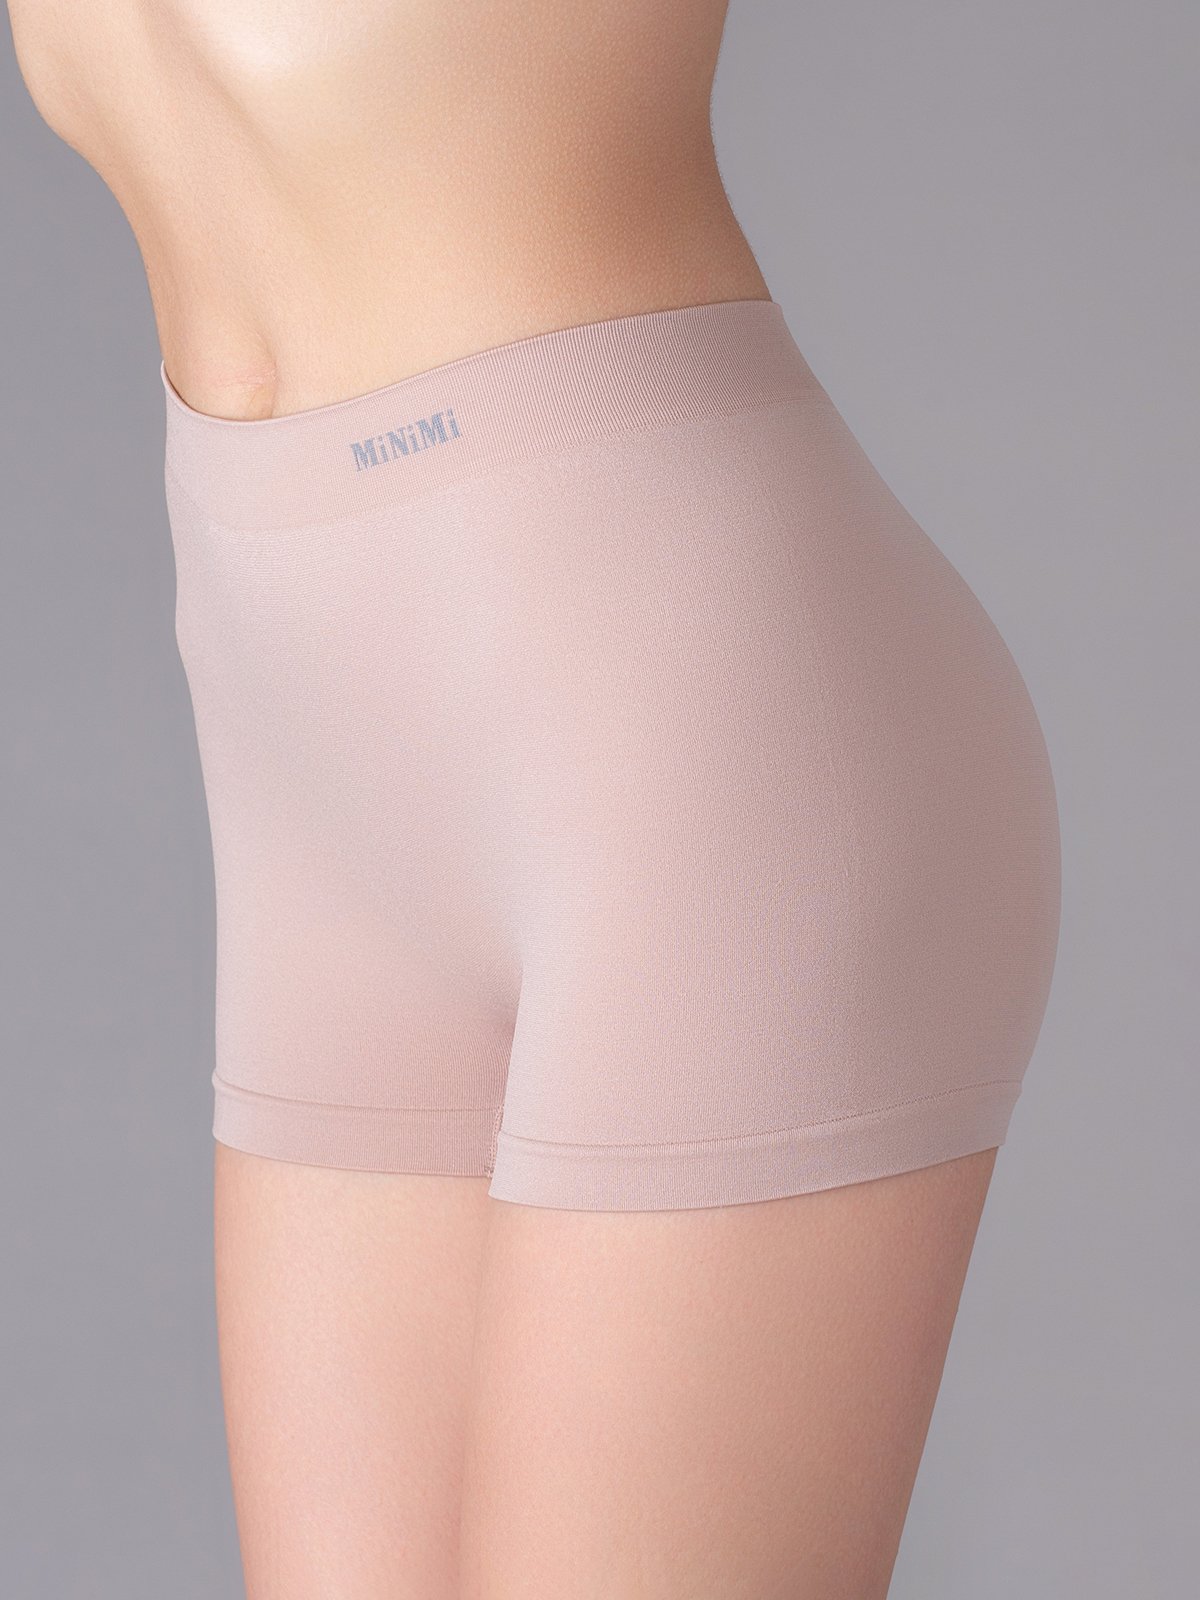 Трусы-шорты женские Minimi Basic MA 270 shorts купить недорого в  интернет-магазине.